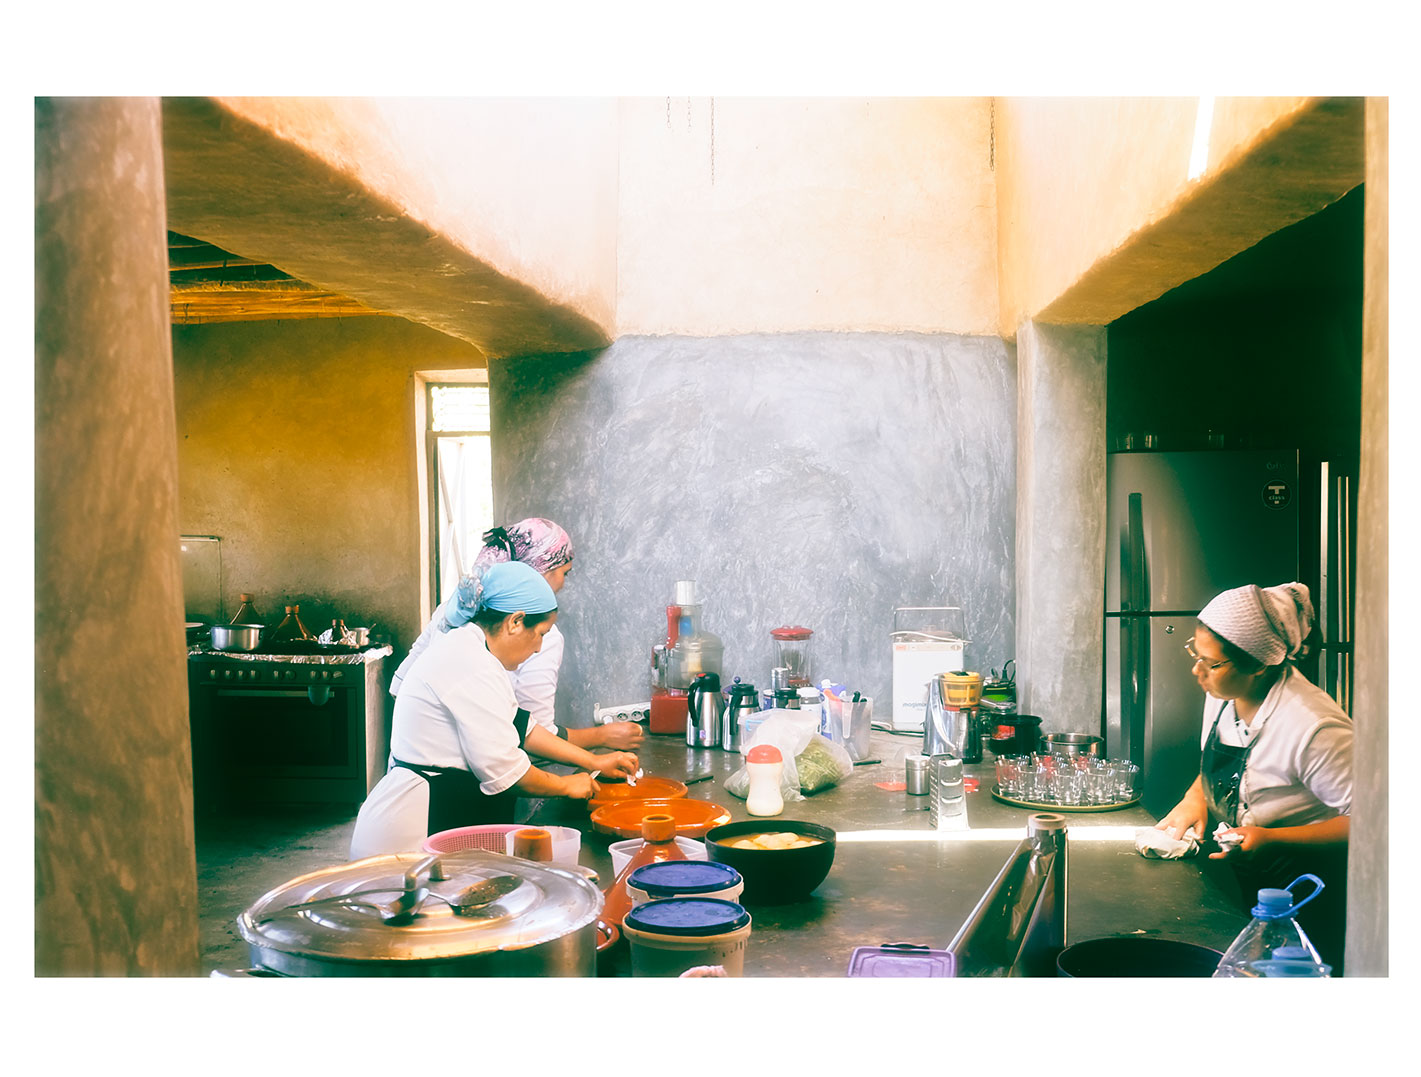 Le personnel de cuisine prépare de véritables plats marocains pour les clients d'un camp de luxe dans le désert de Marrakech - La Pause Maroc.